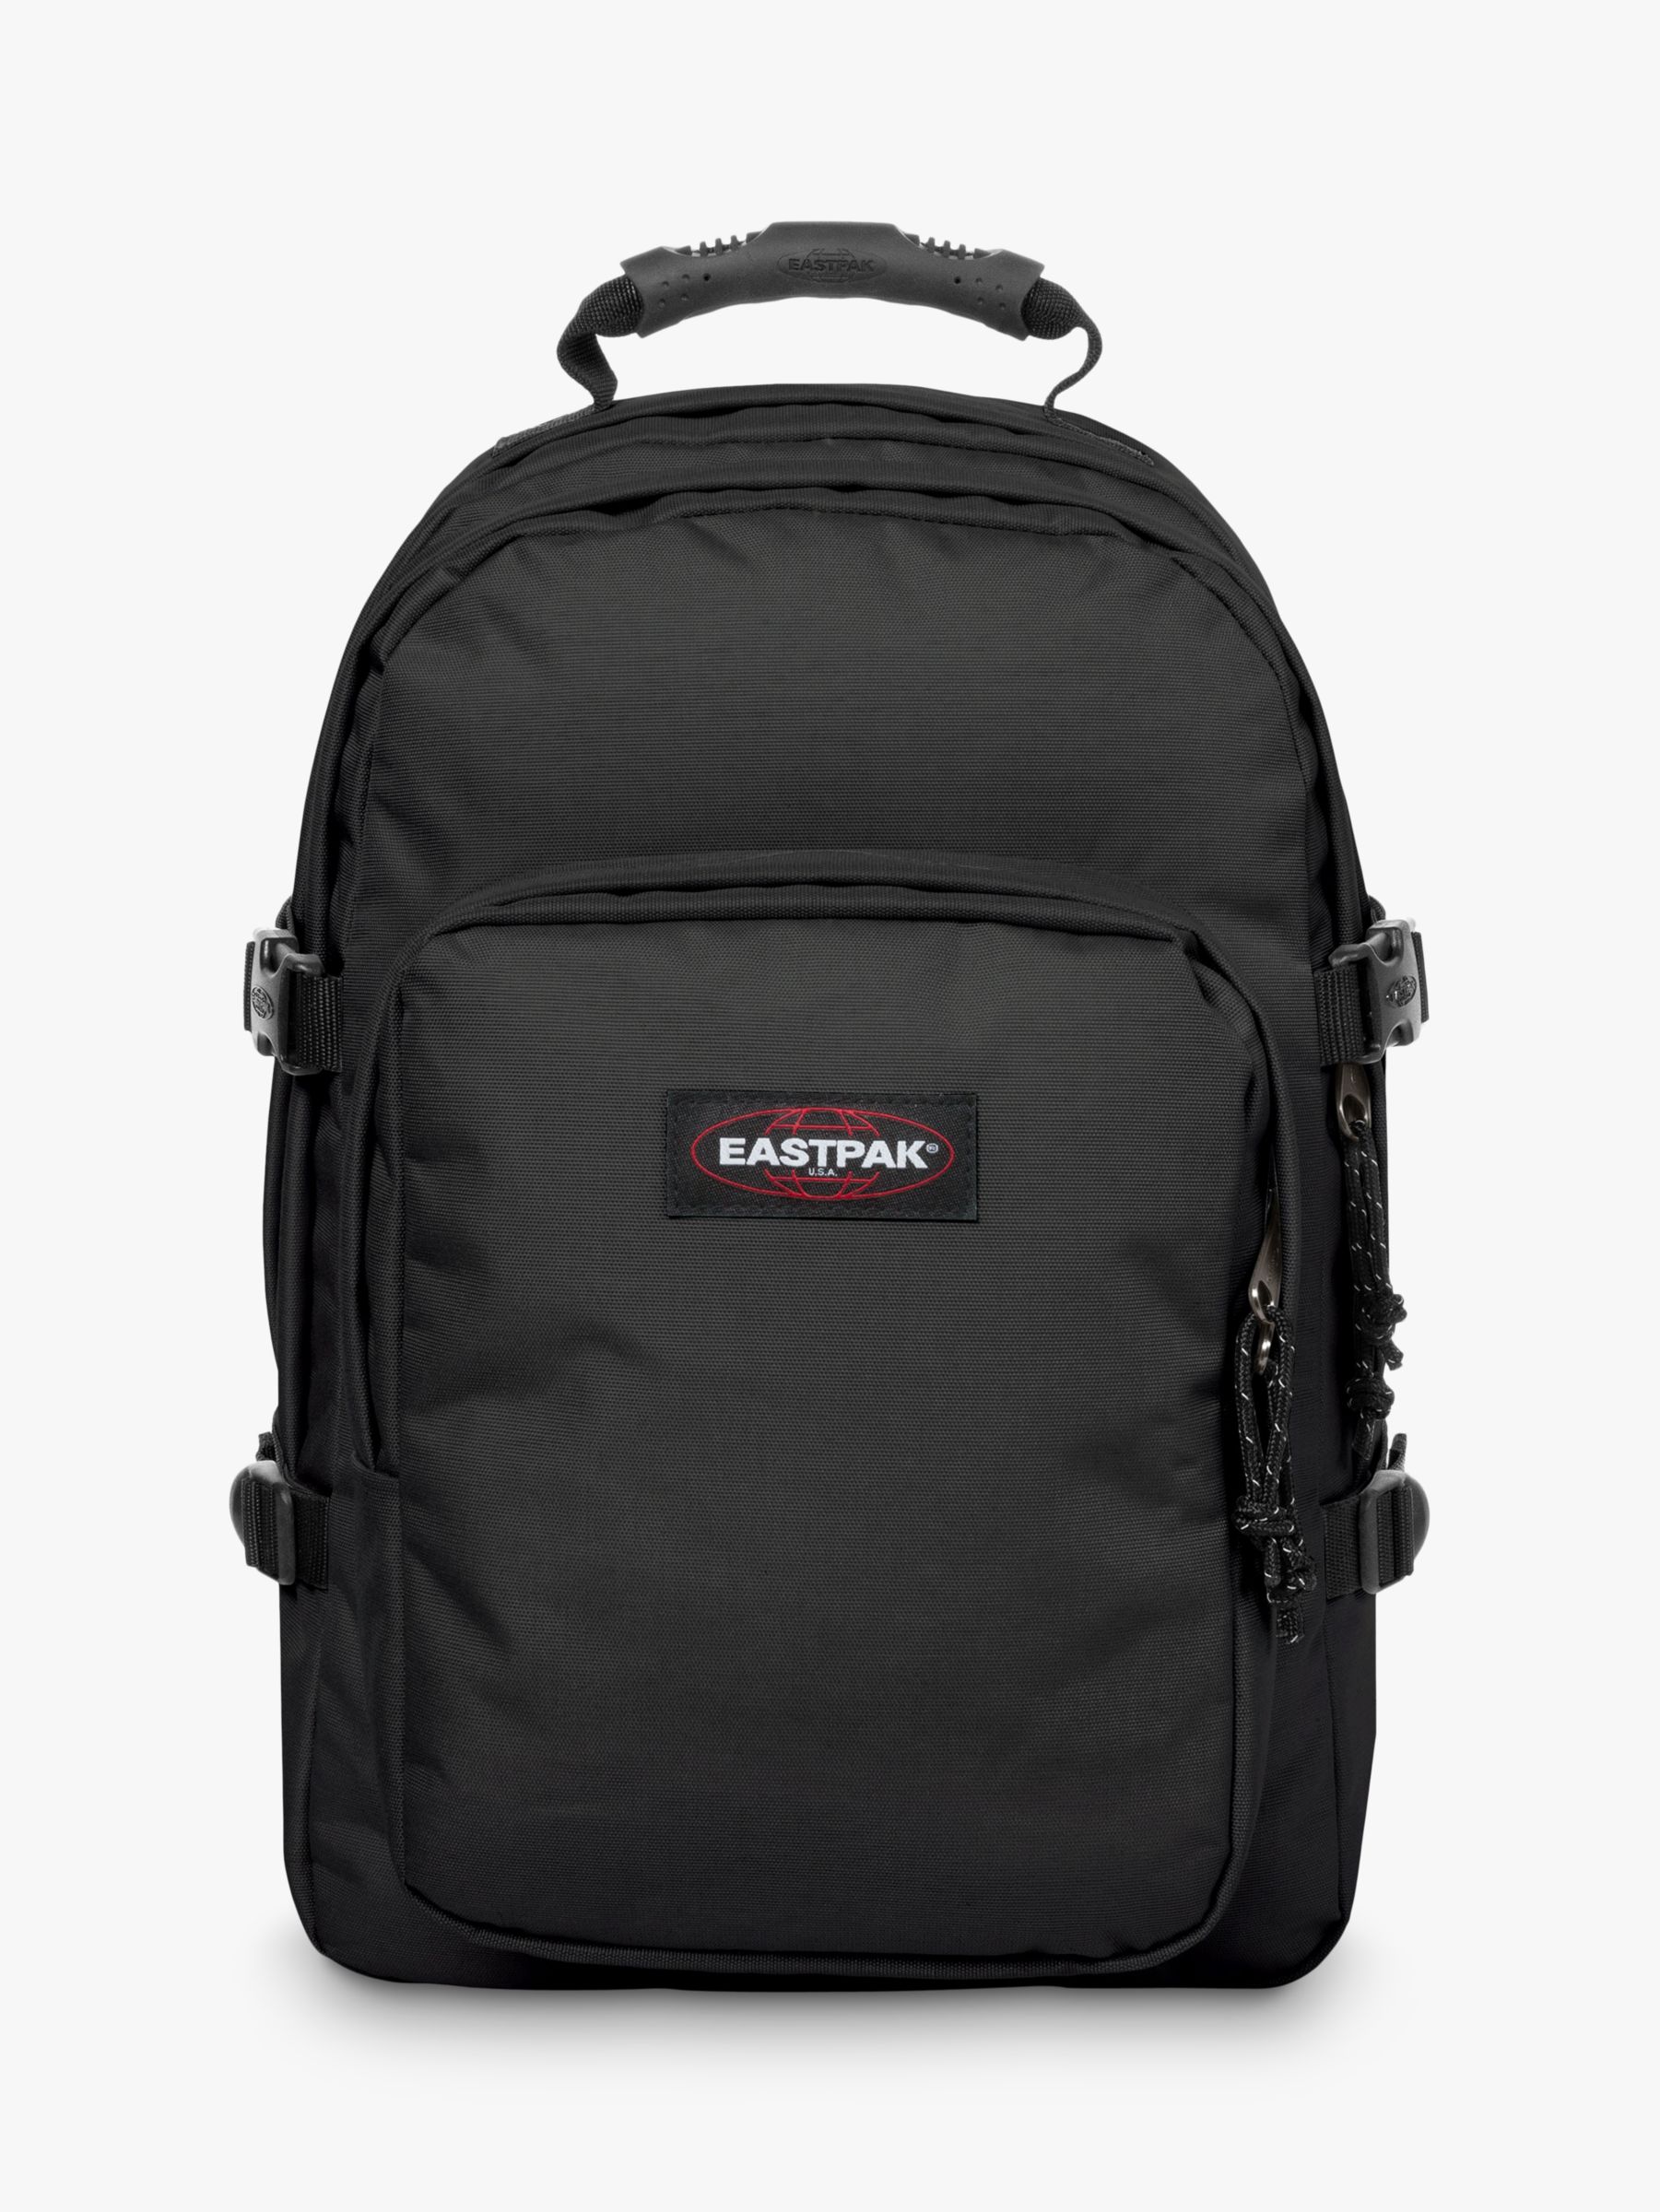 Eastpak 15" Laptop Backpack, Black